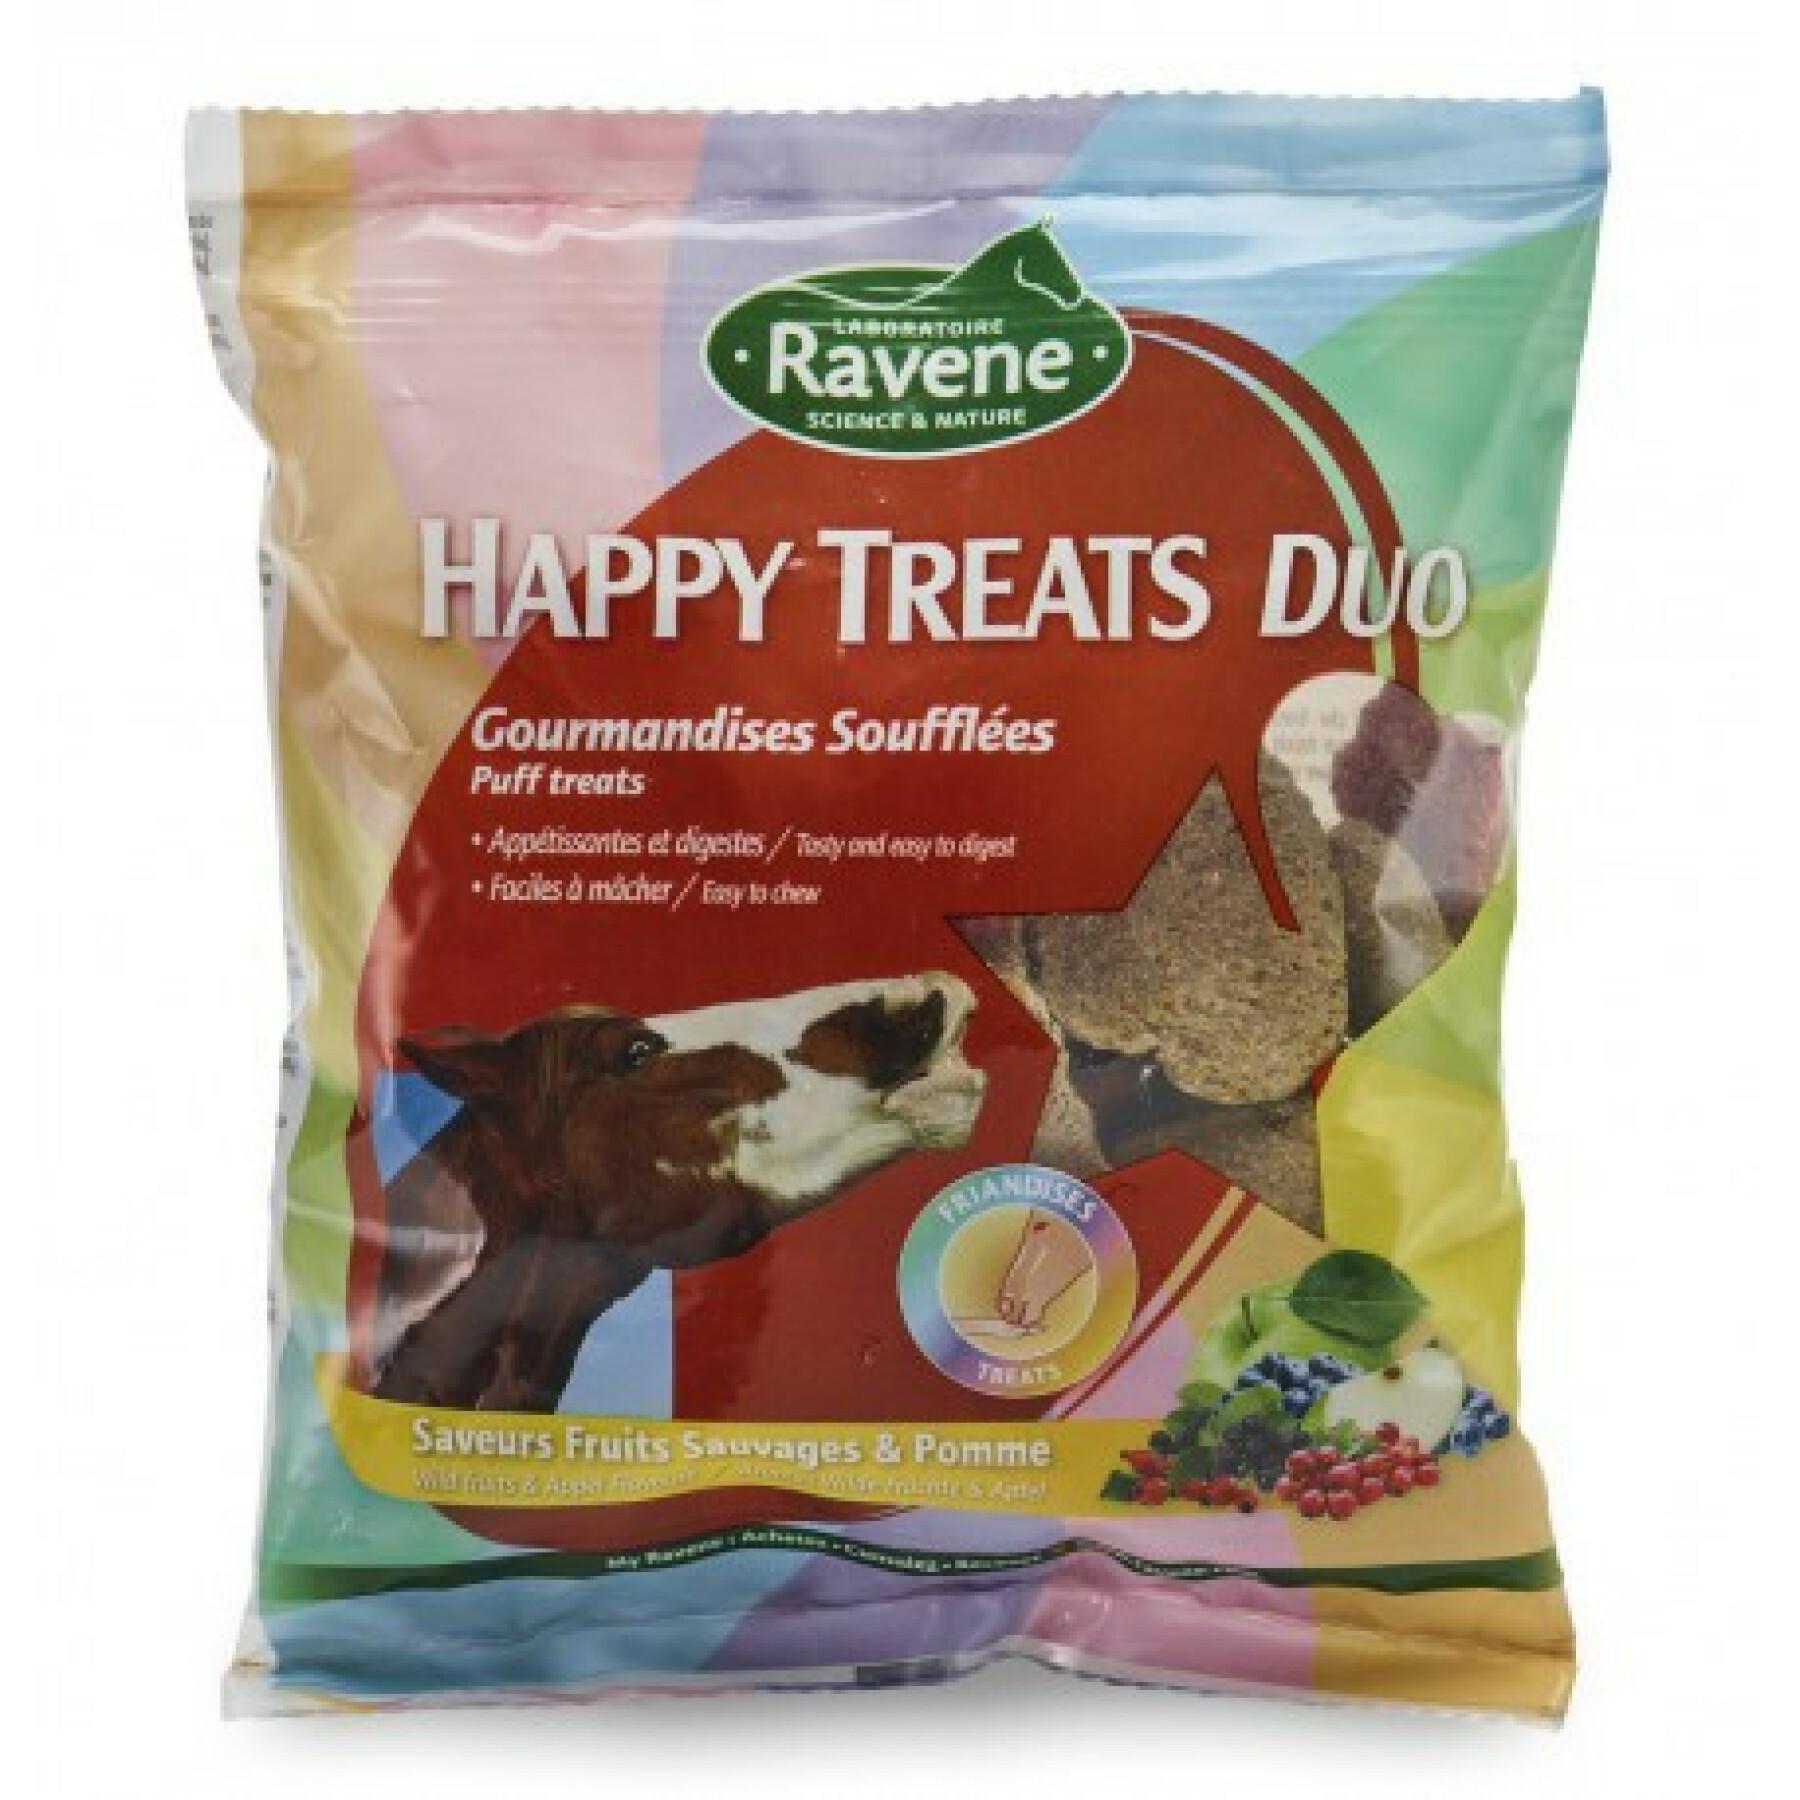 Happy Treats Duo voedingssupplement voor paarden Ravene